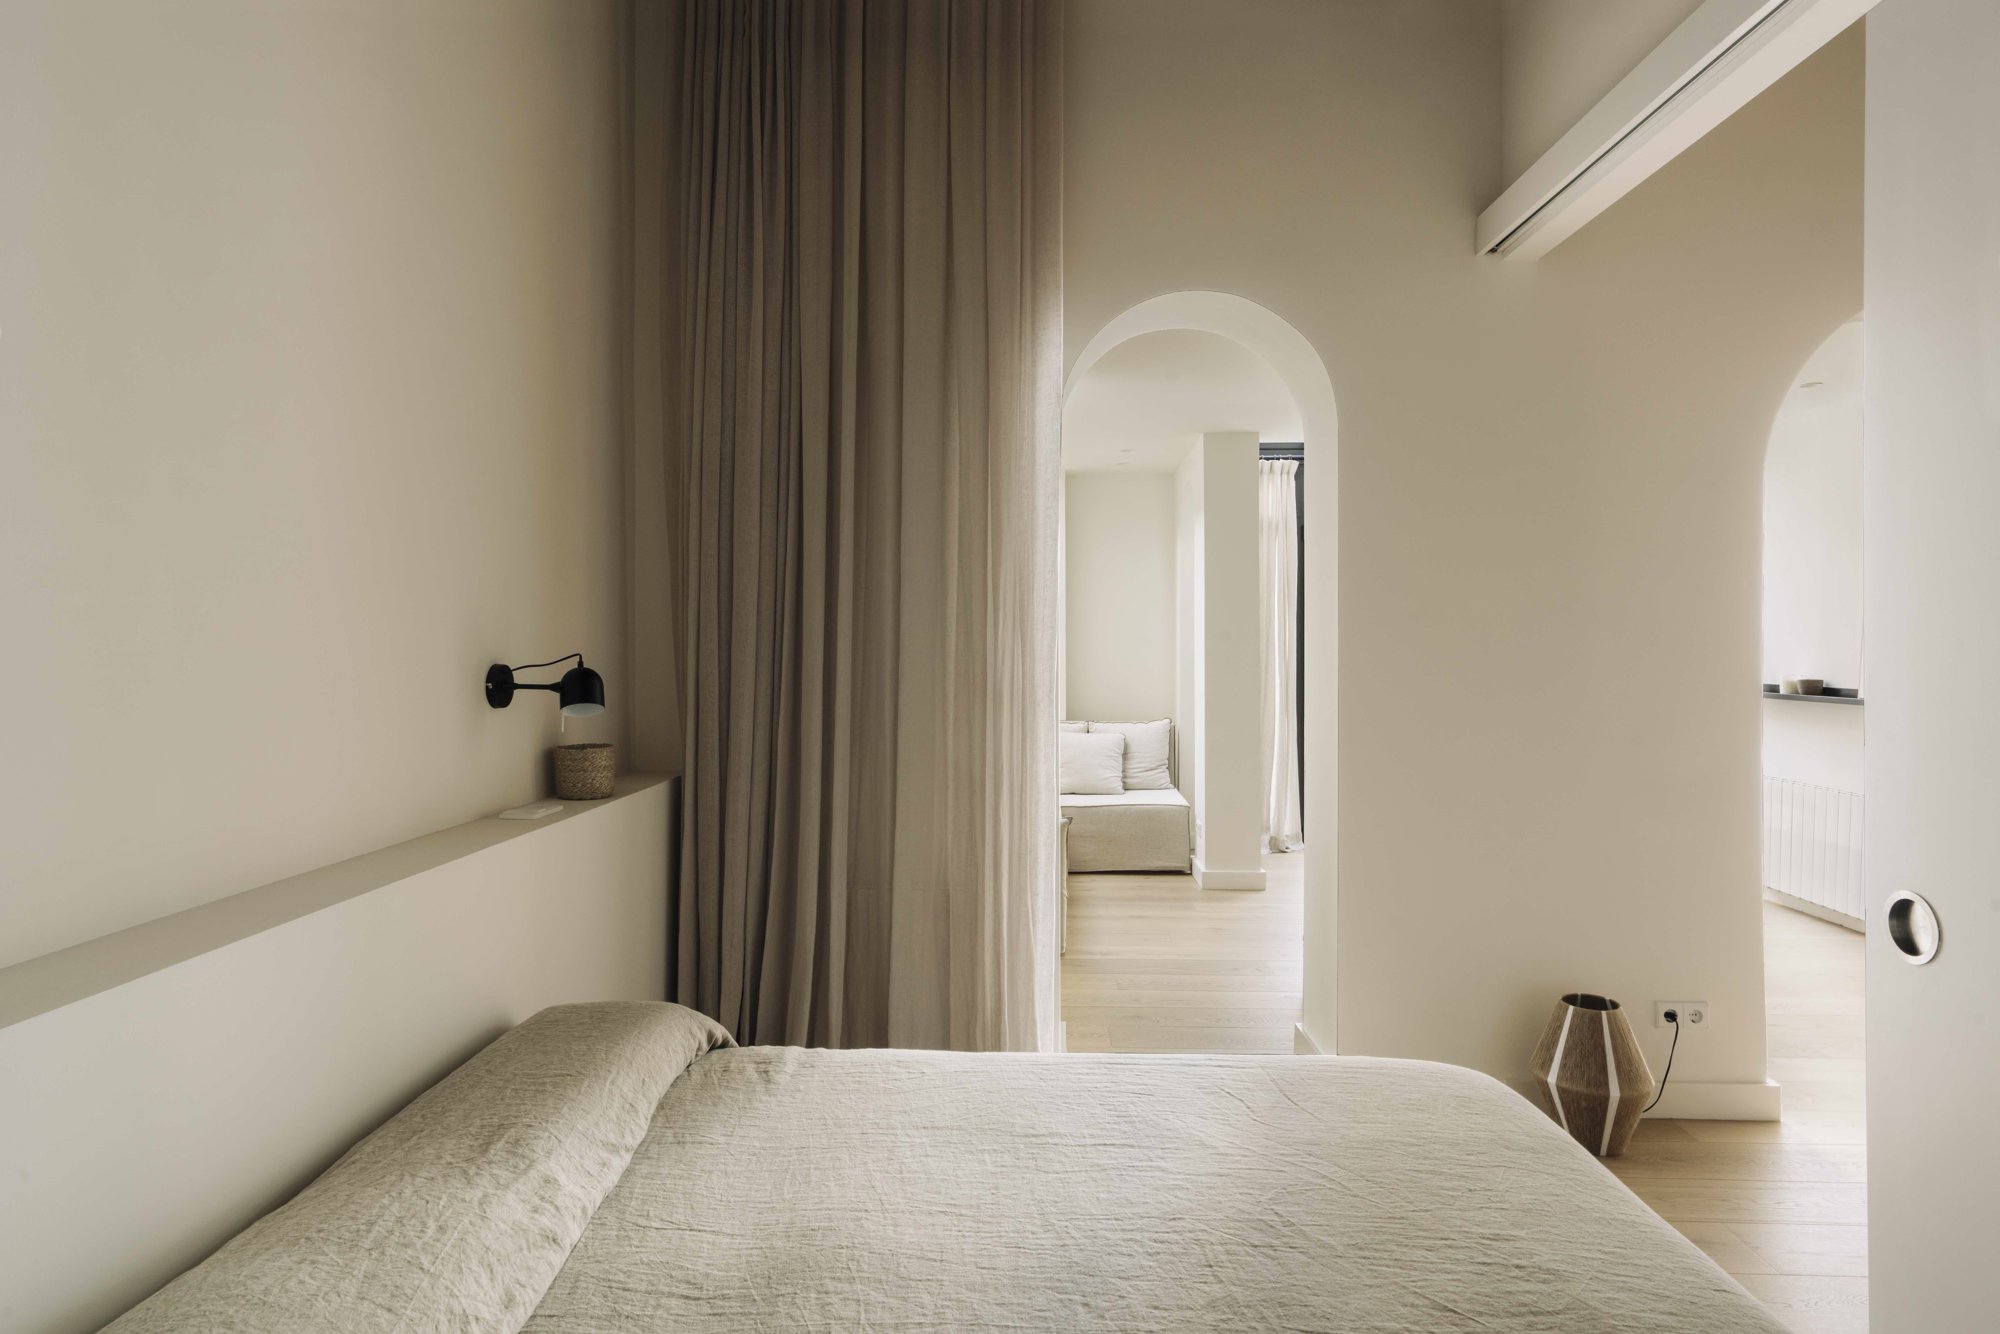 Dormitorio cabecero obra integrado color blanco